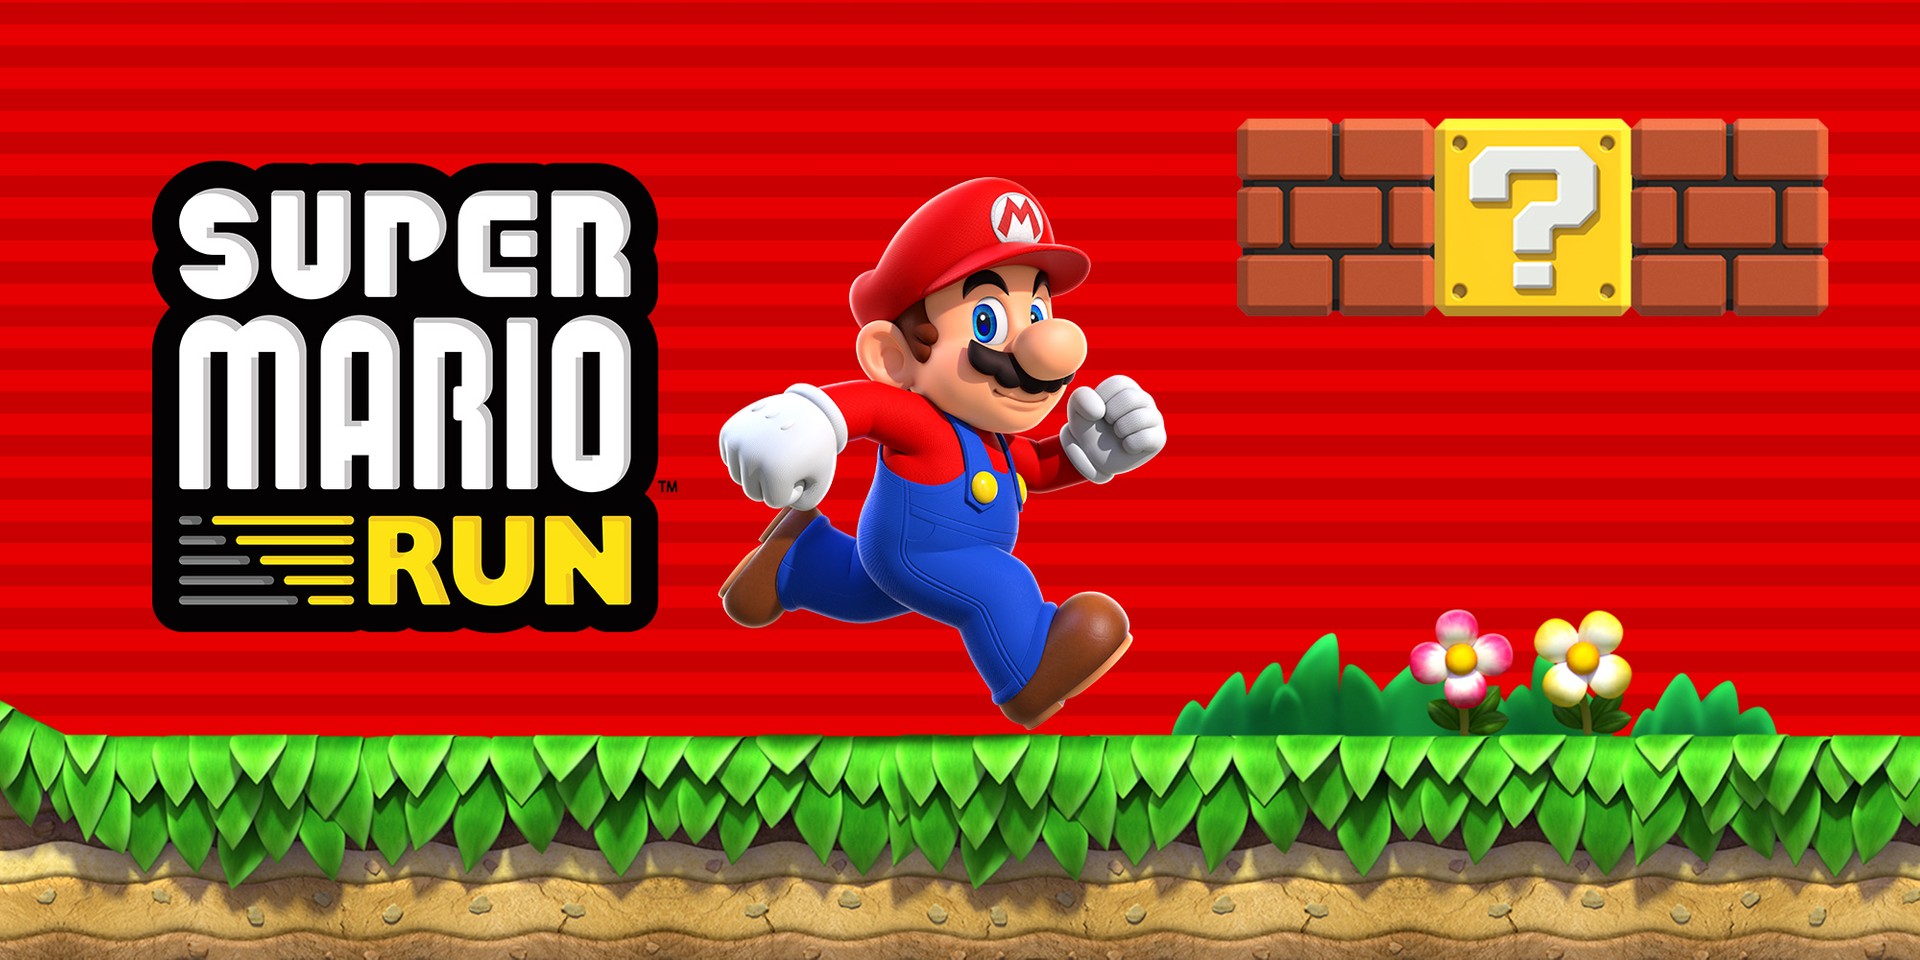 Correndo de Super Mario Run, Temple Run 2 ganha nova